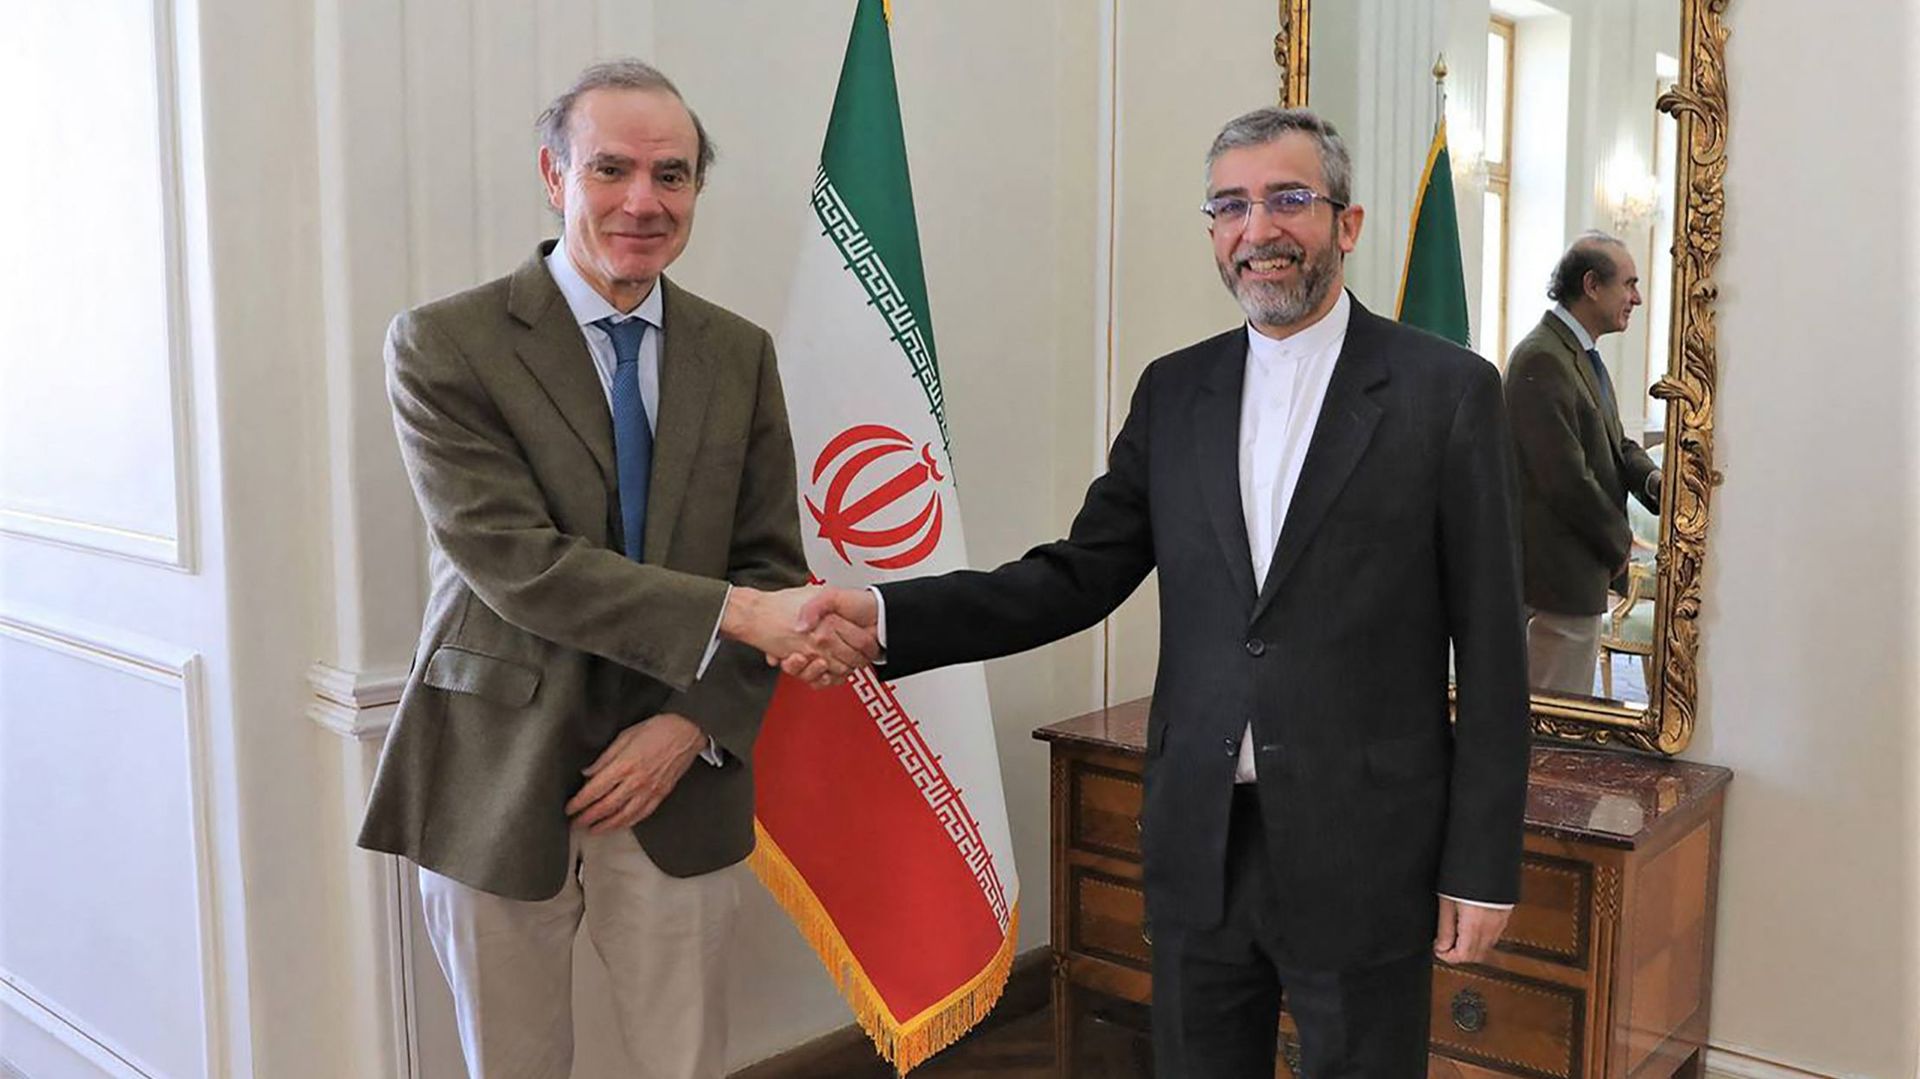 Le coordinateur de l'Union européenne chargé de superviser les pourparlers sur le nucléaire iranien à Vienne, Enrique Mora, et Ali Bagheri, négociateur en chef de la République islamique d'Iran, s'étaient déjà rencontrés en mars 2022, à Téhéran.